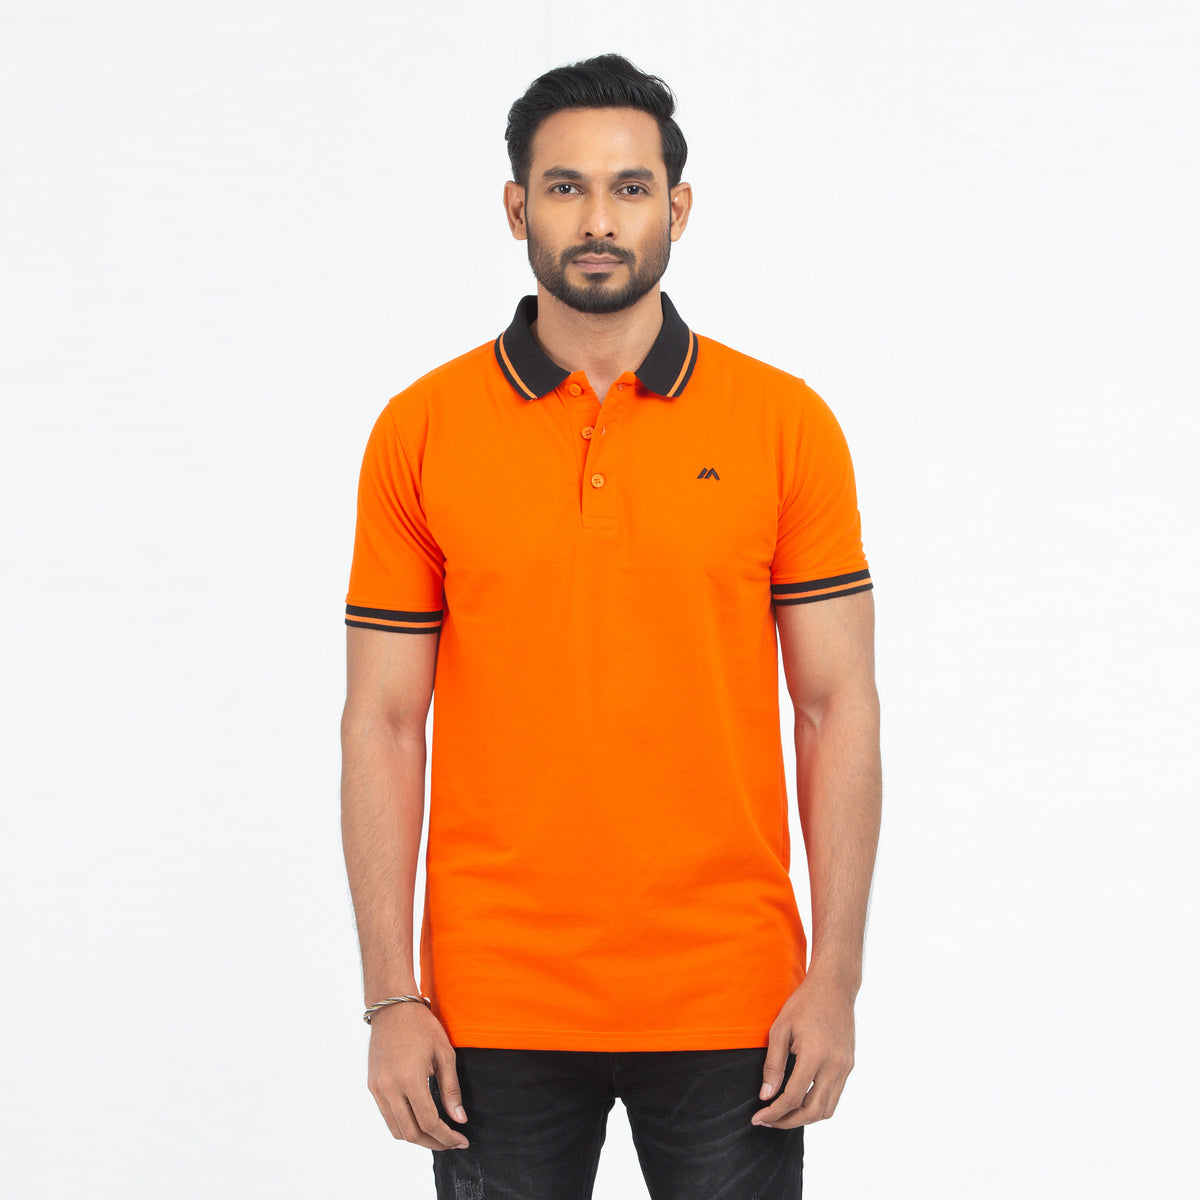 Cozy Pique Half Sleeve Polo Shirt - Orange